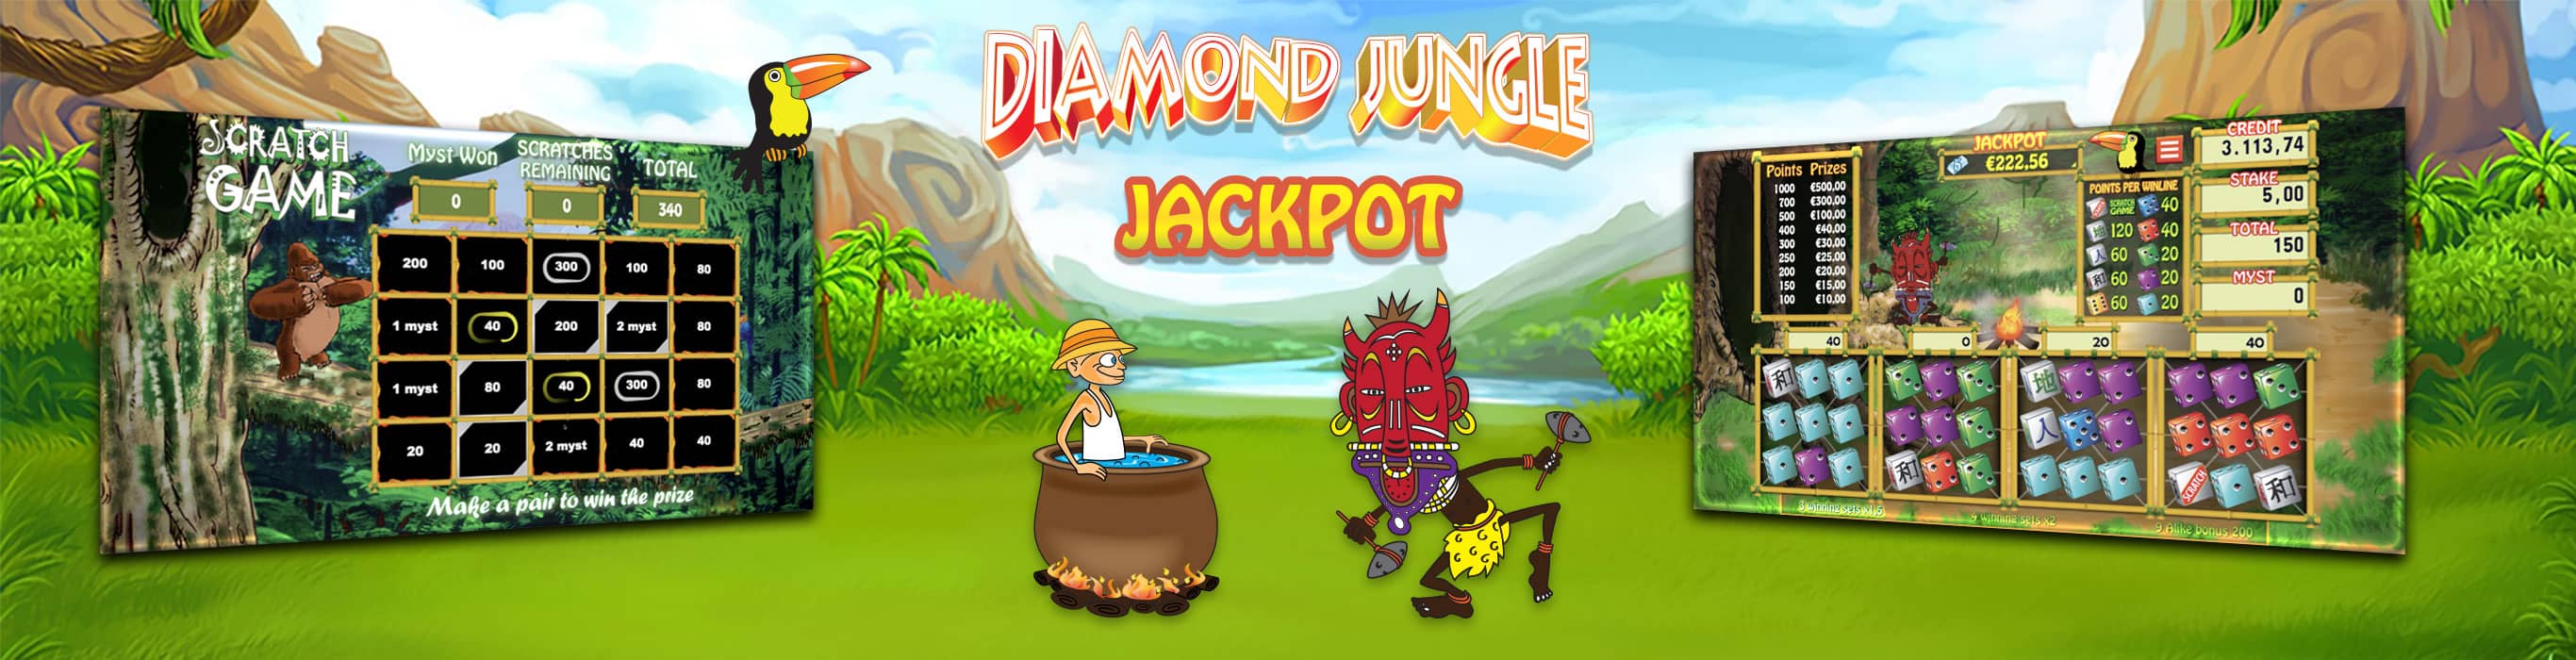 diamondjunglejackpot-banner-2732x700-m